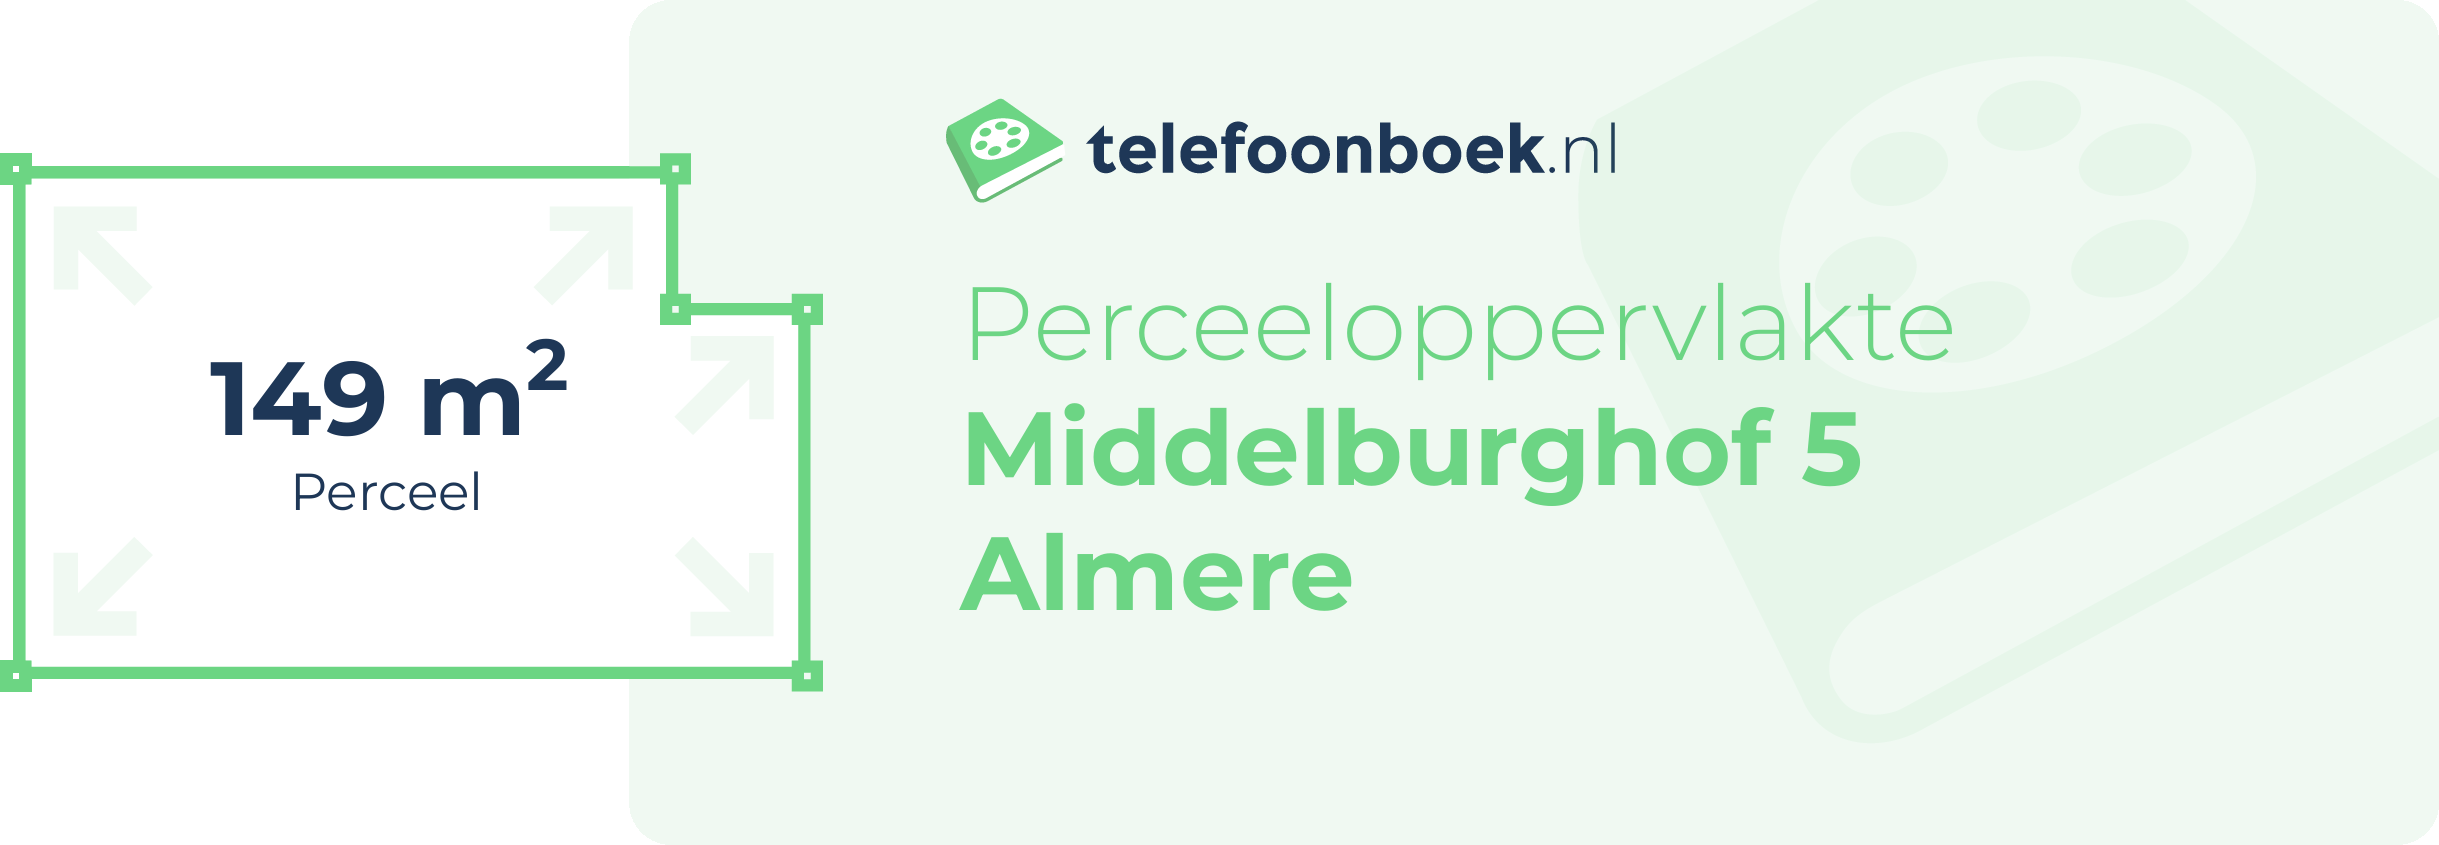 Perceeloppervlakte Middelburghof 5 Almere